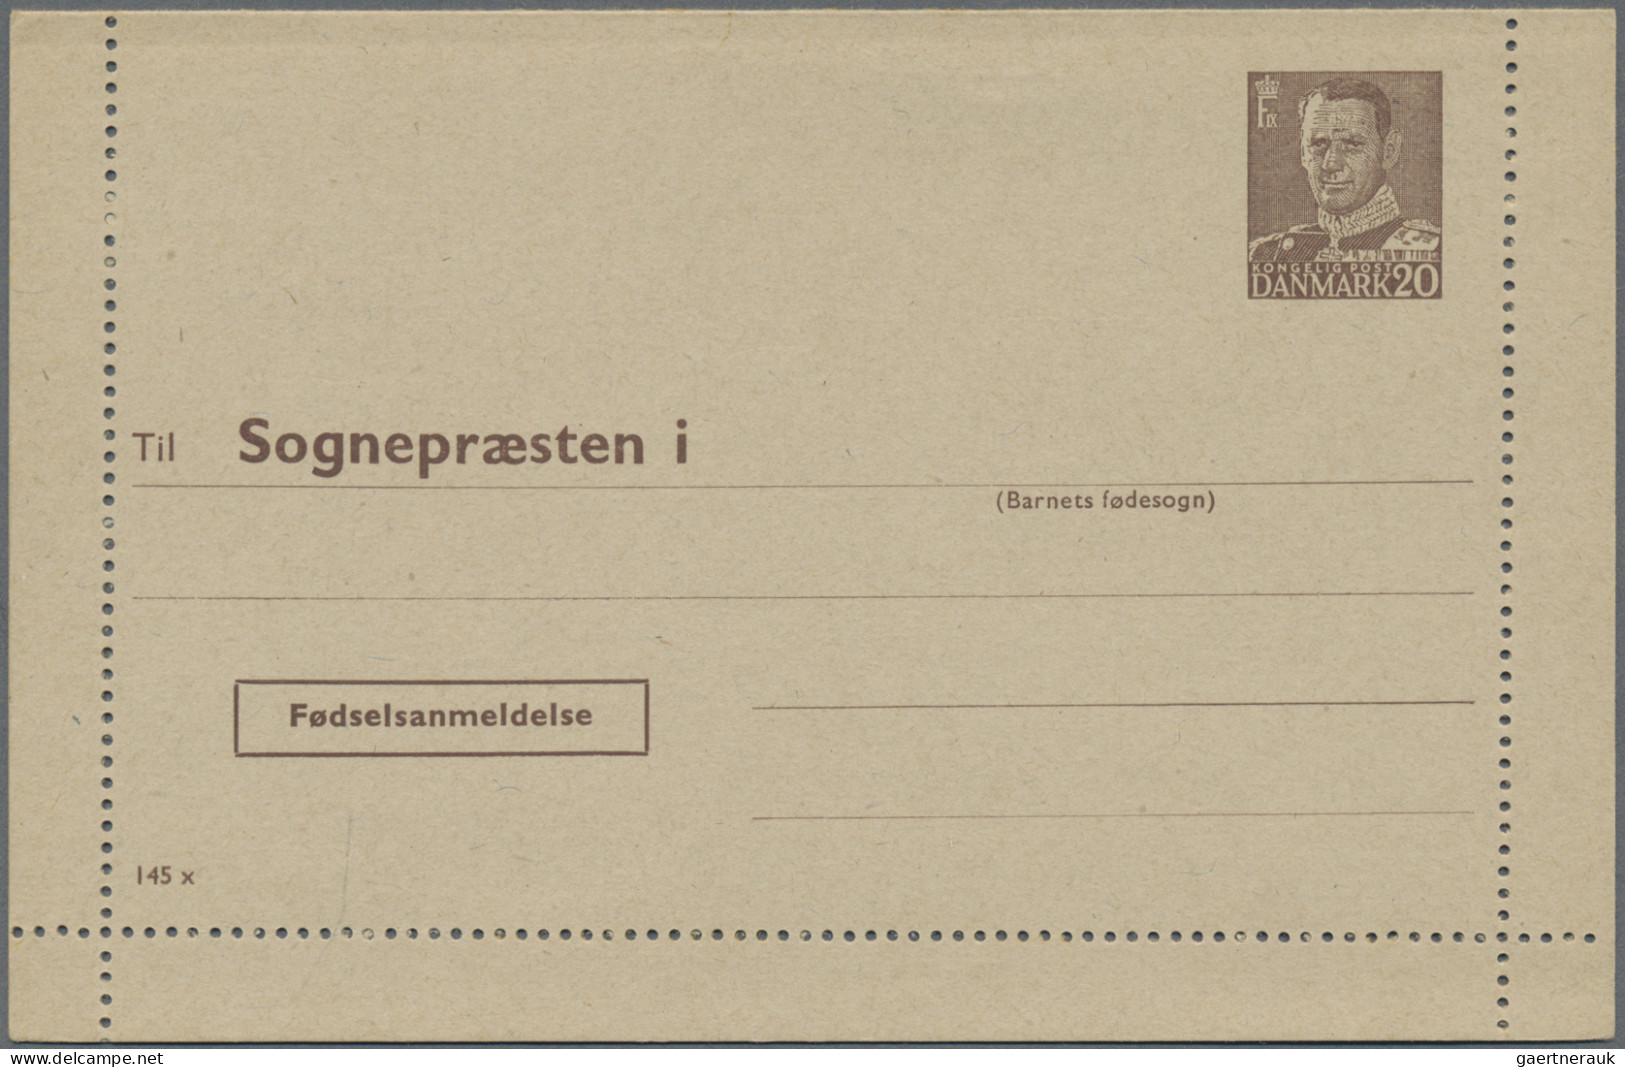 Denmark - postal stationery: 1953/1967, Letter Cards for Population Register, lo